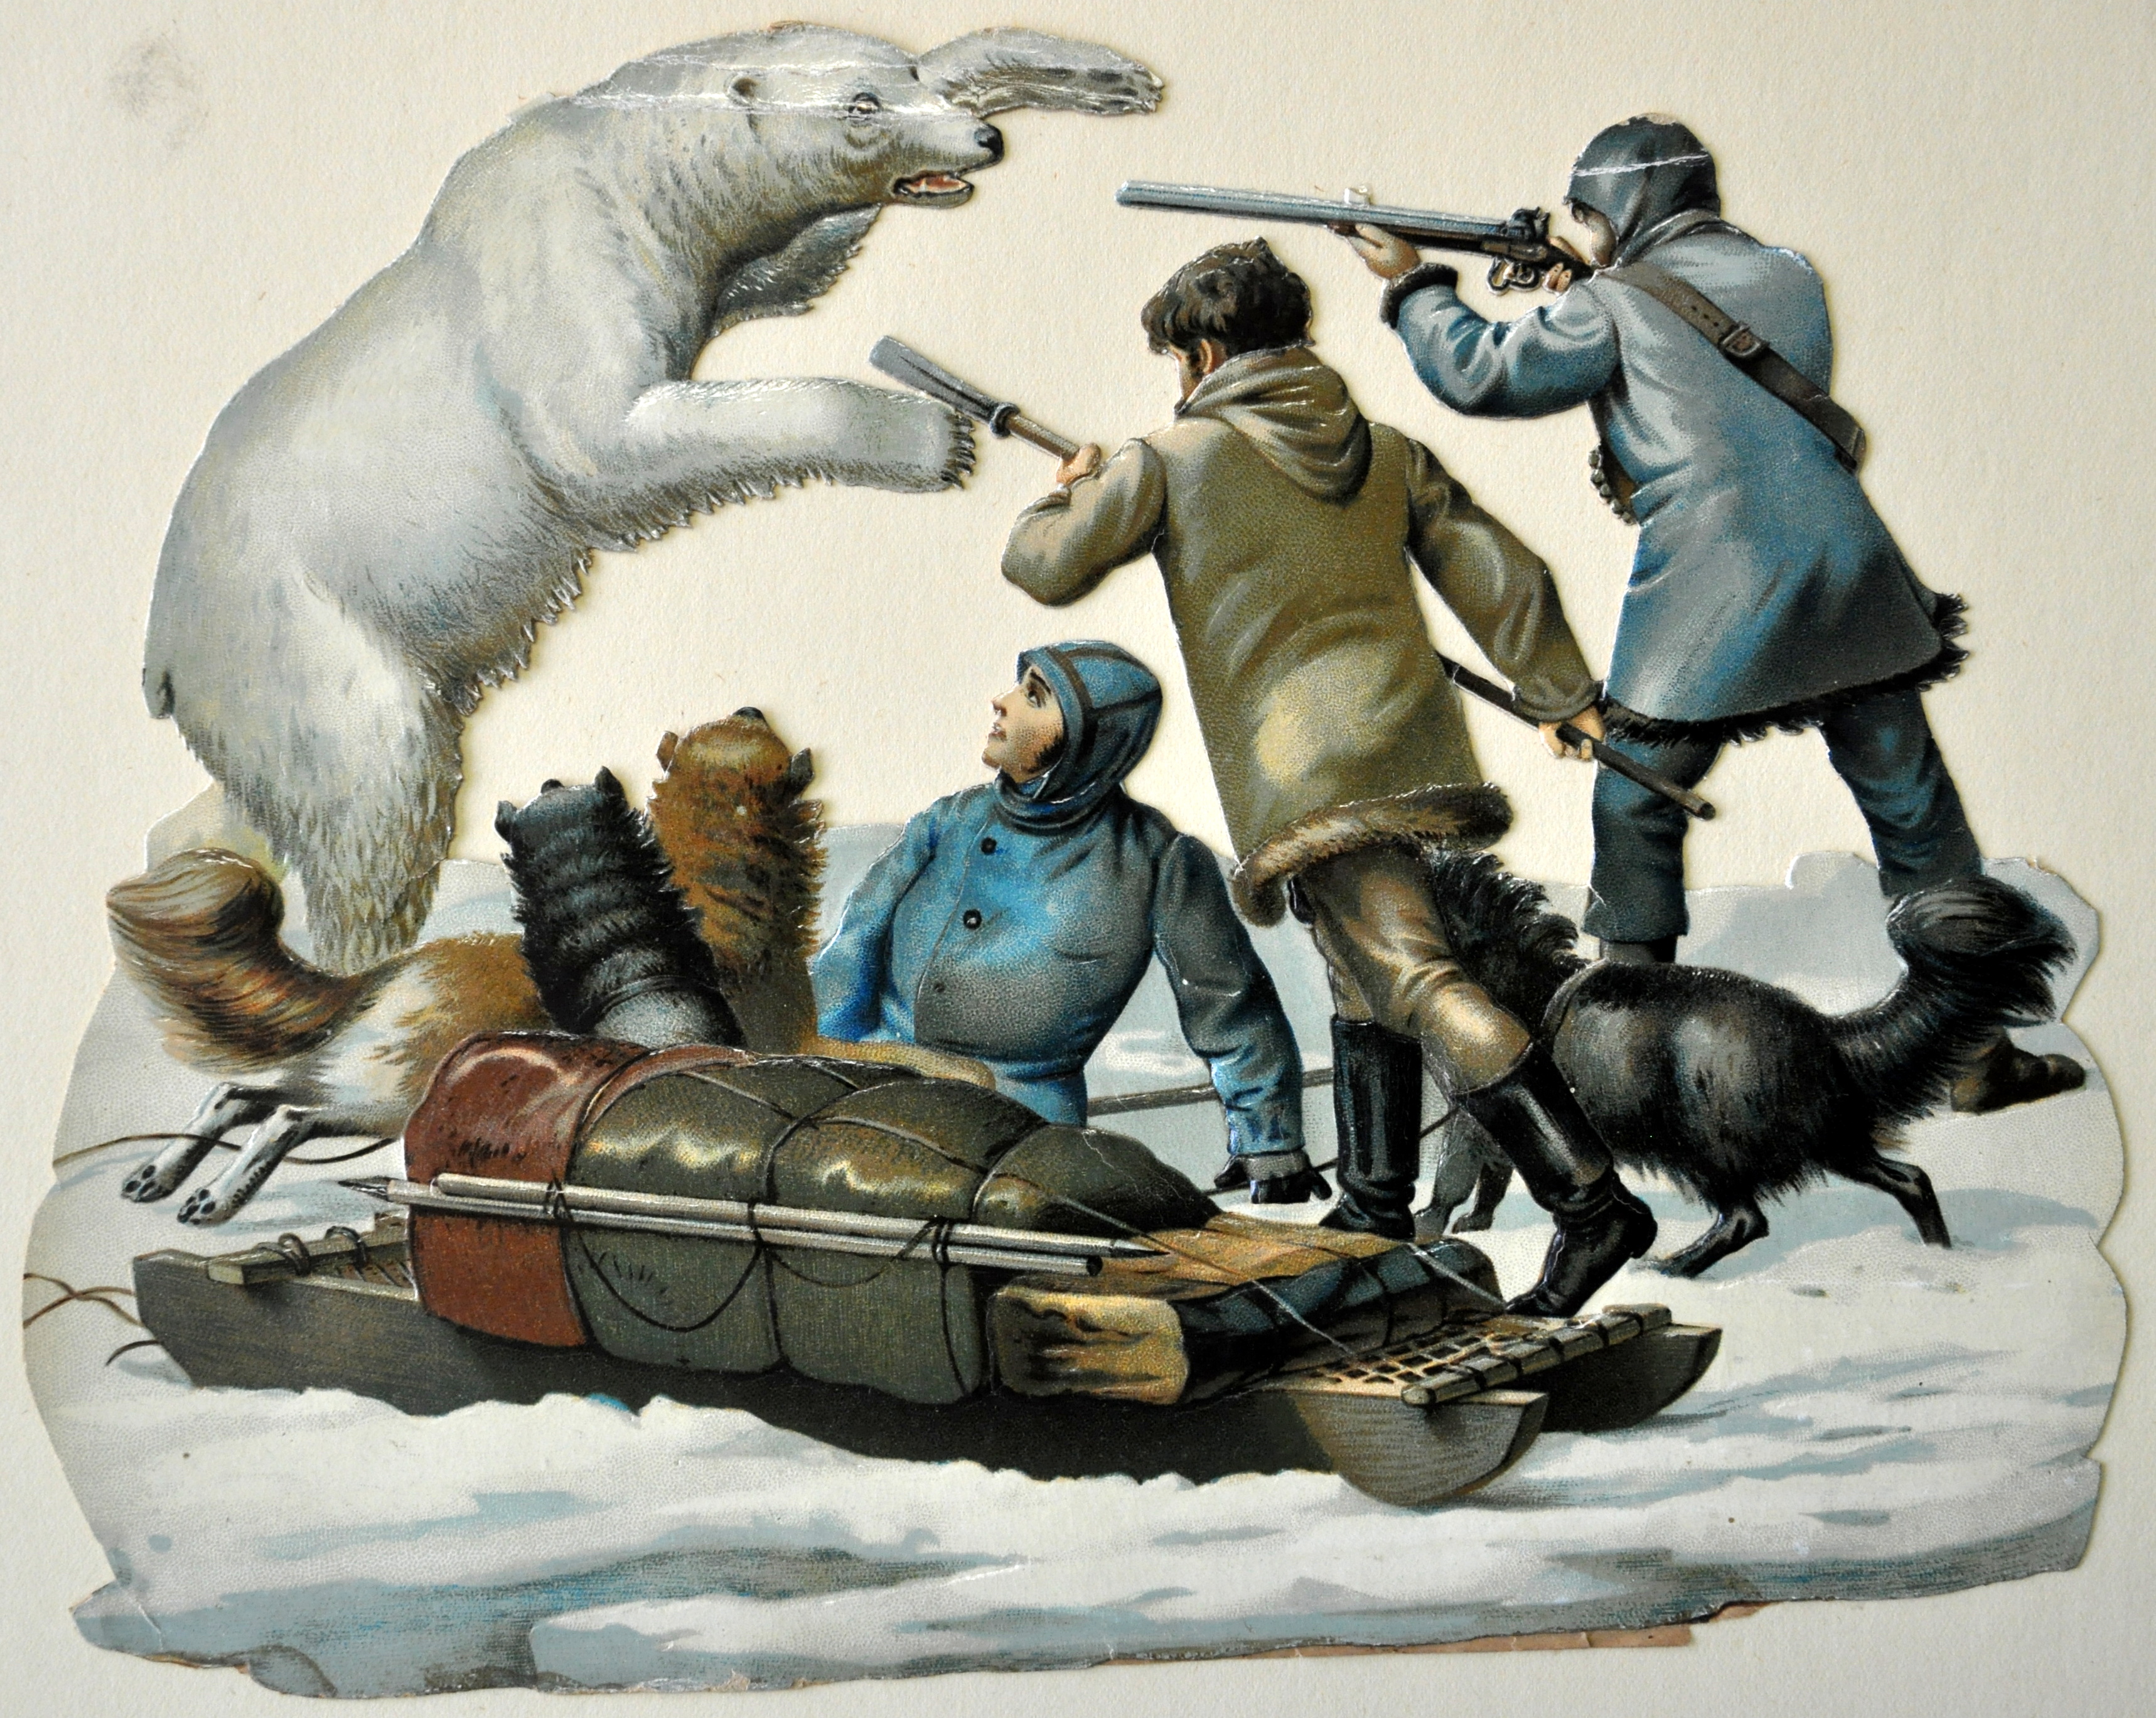 Poolreizigers worden aangevallen door een ijsbeer, poëzieplaatje, 19de eeuw. HMDB.